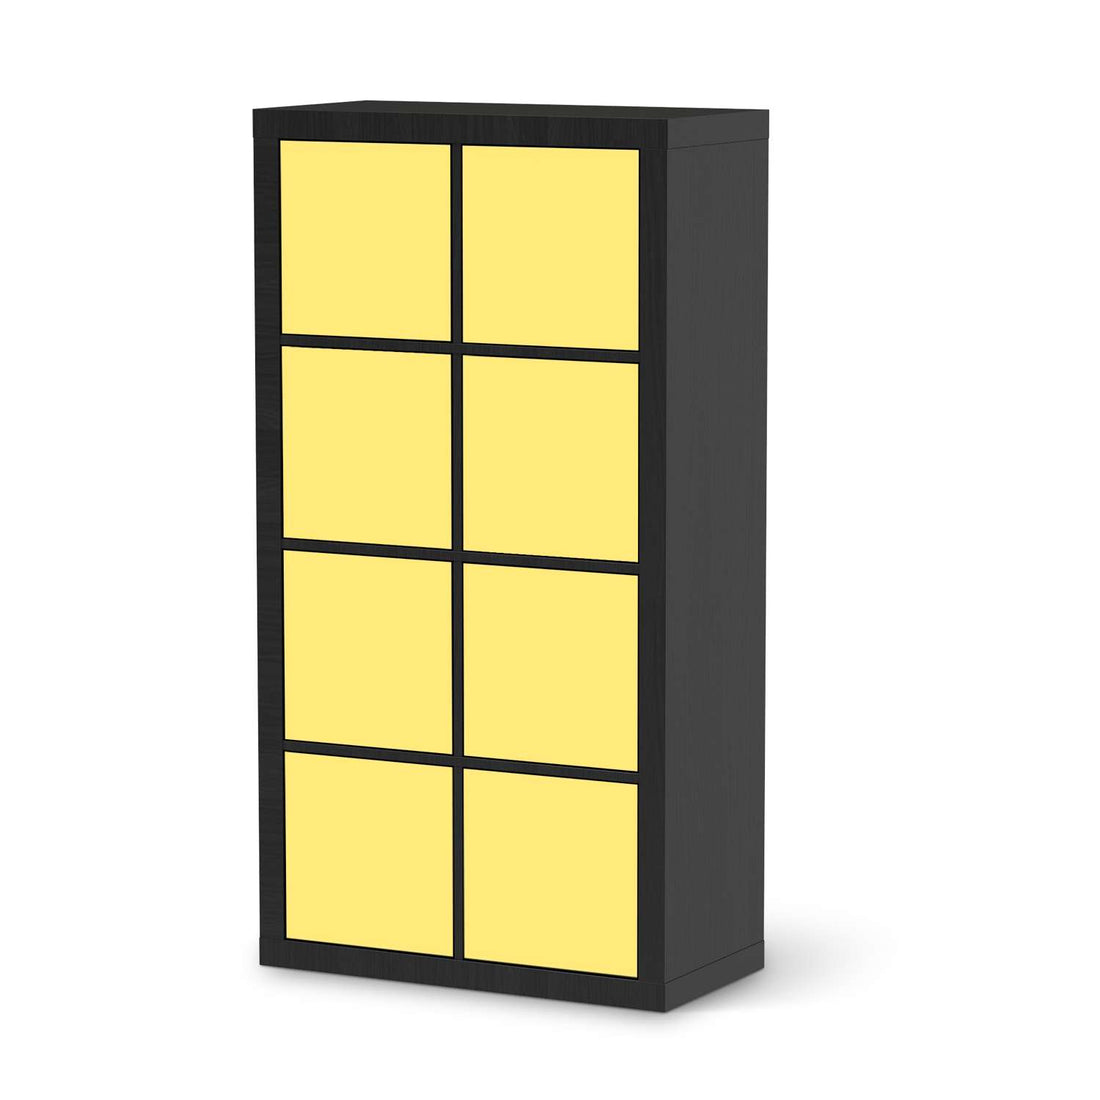 Folie für Möbel Gelb Light - IKEA Kallax Regal 8 Türen - schwarz